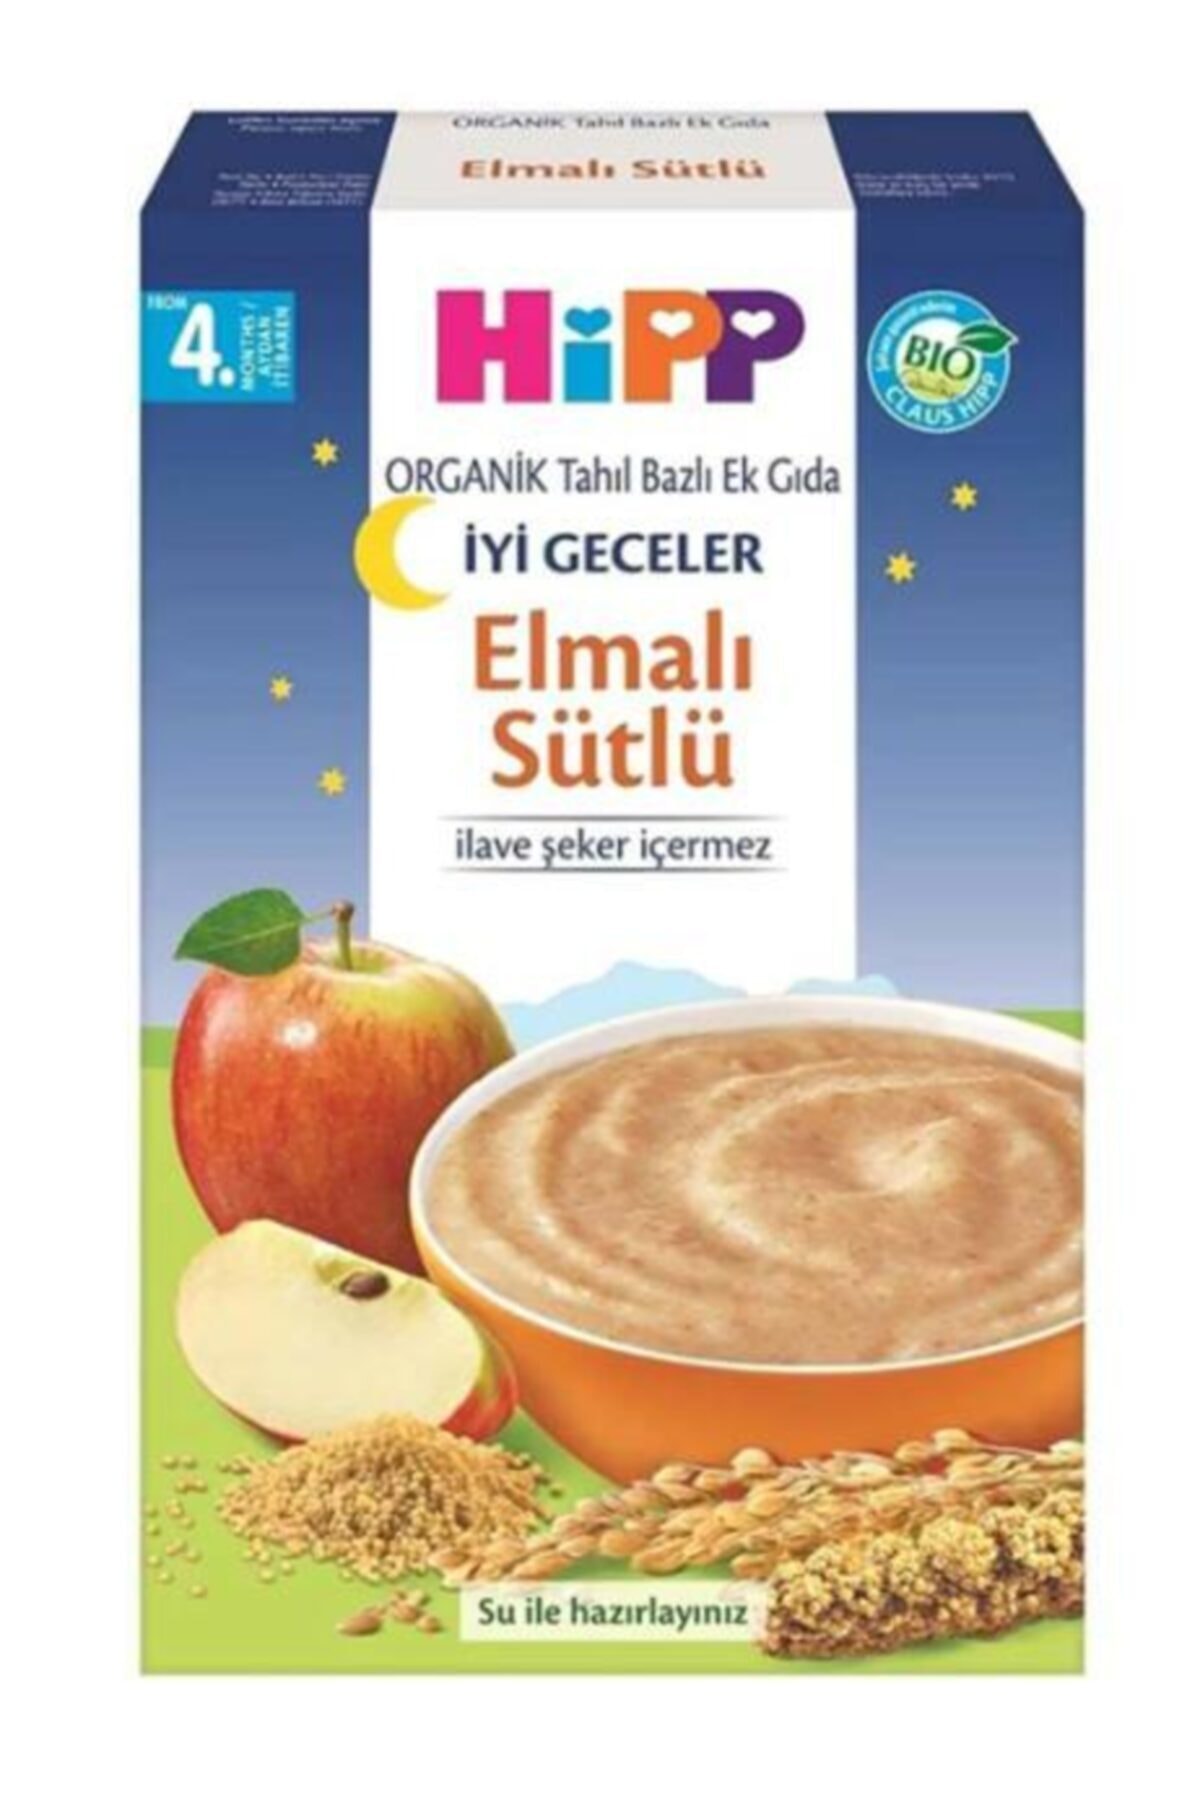 Hipp Unisex Organik Tahıl Bazlı Ek Gıda Organik Sütlü Elmalı 250 gr